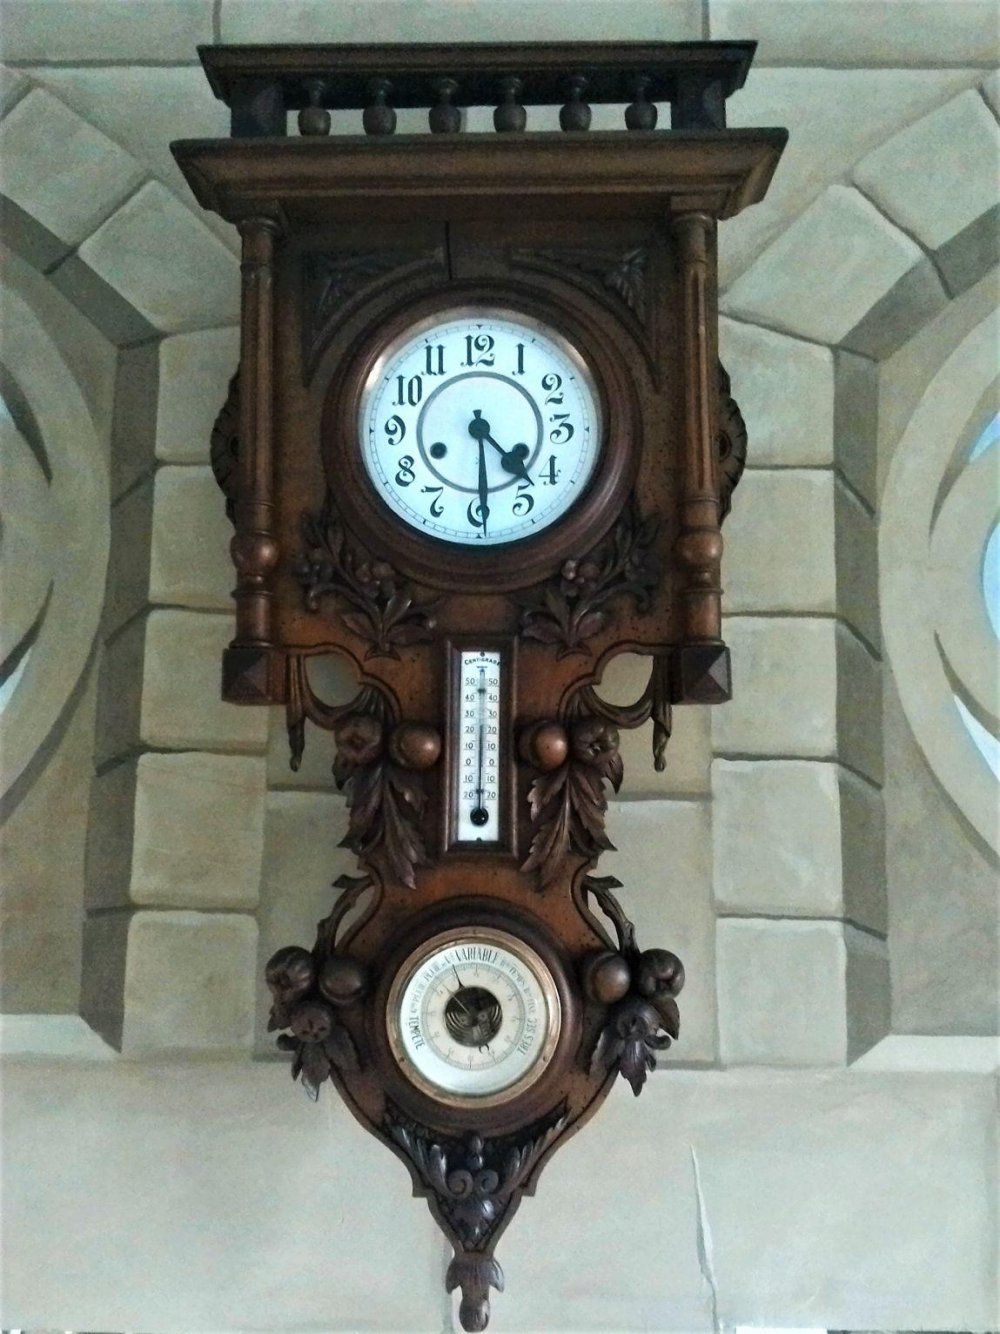 Барометр с часами настенный. Часы с боем hau с барометром 19 век. Часы Маяк с барометром и термометром. Часы с барометром настенные. Старинные настенные часы с барометром.